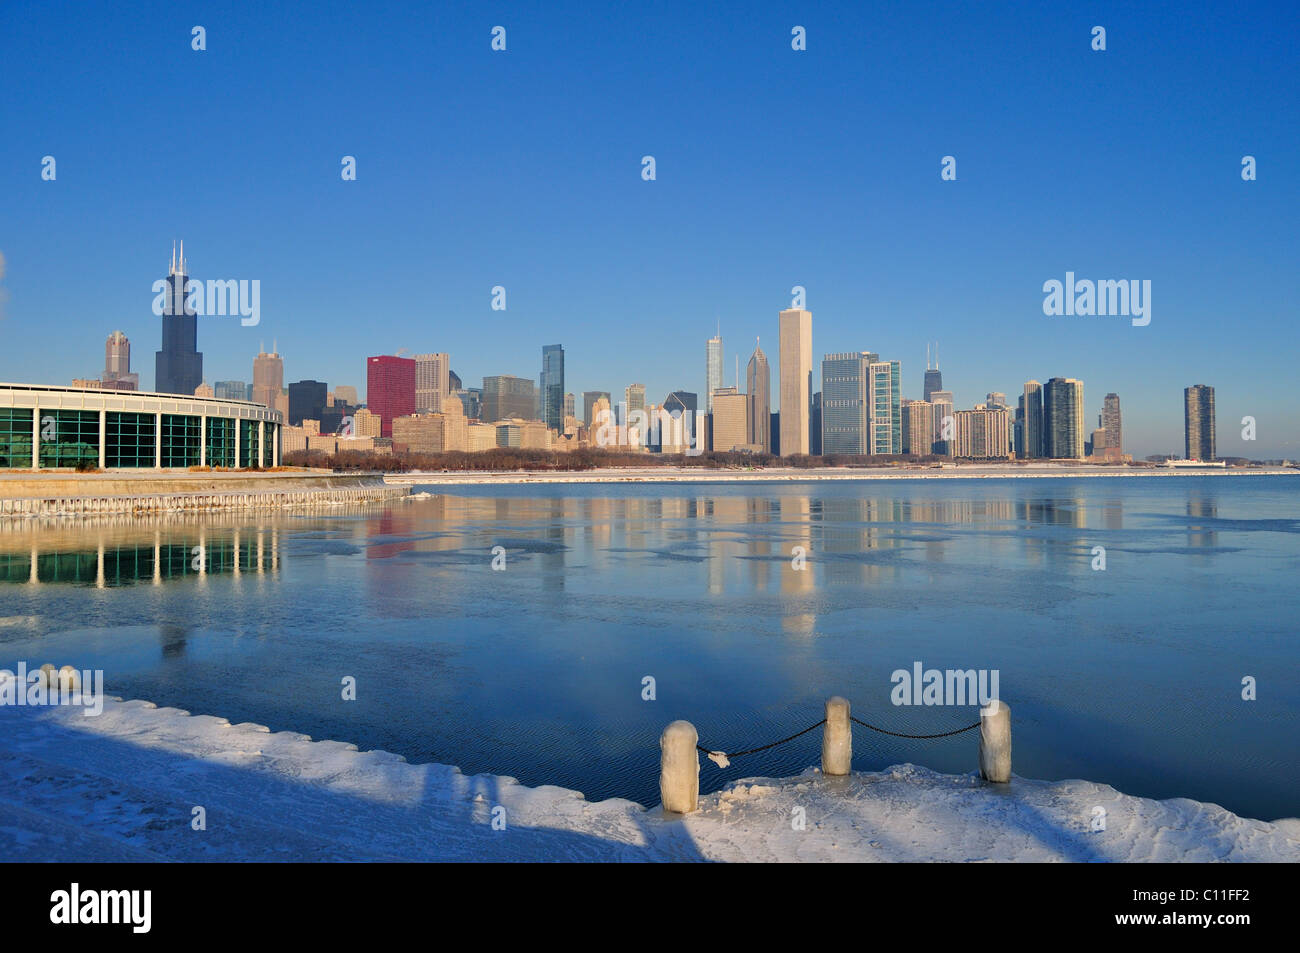 La formation de glace dans les ports du Lac Michigan Lac reflètent la ville sur une très froid matin de décembre. Chicago, Illinois, USA. Banque D'Images